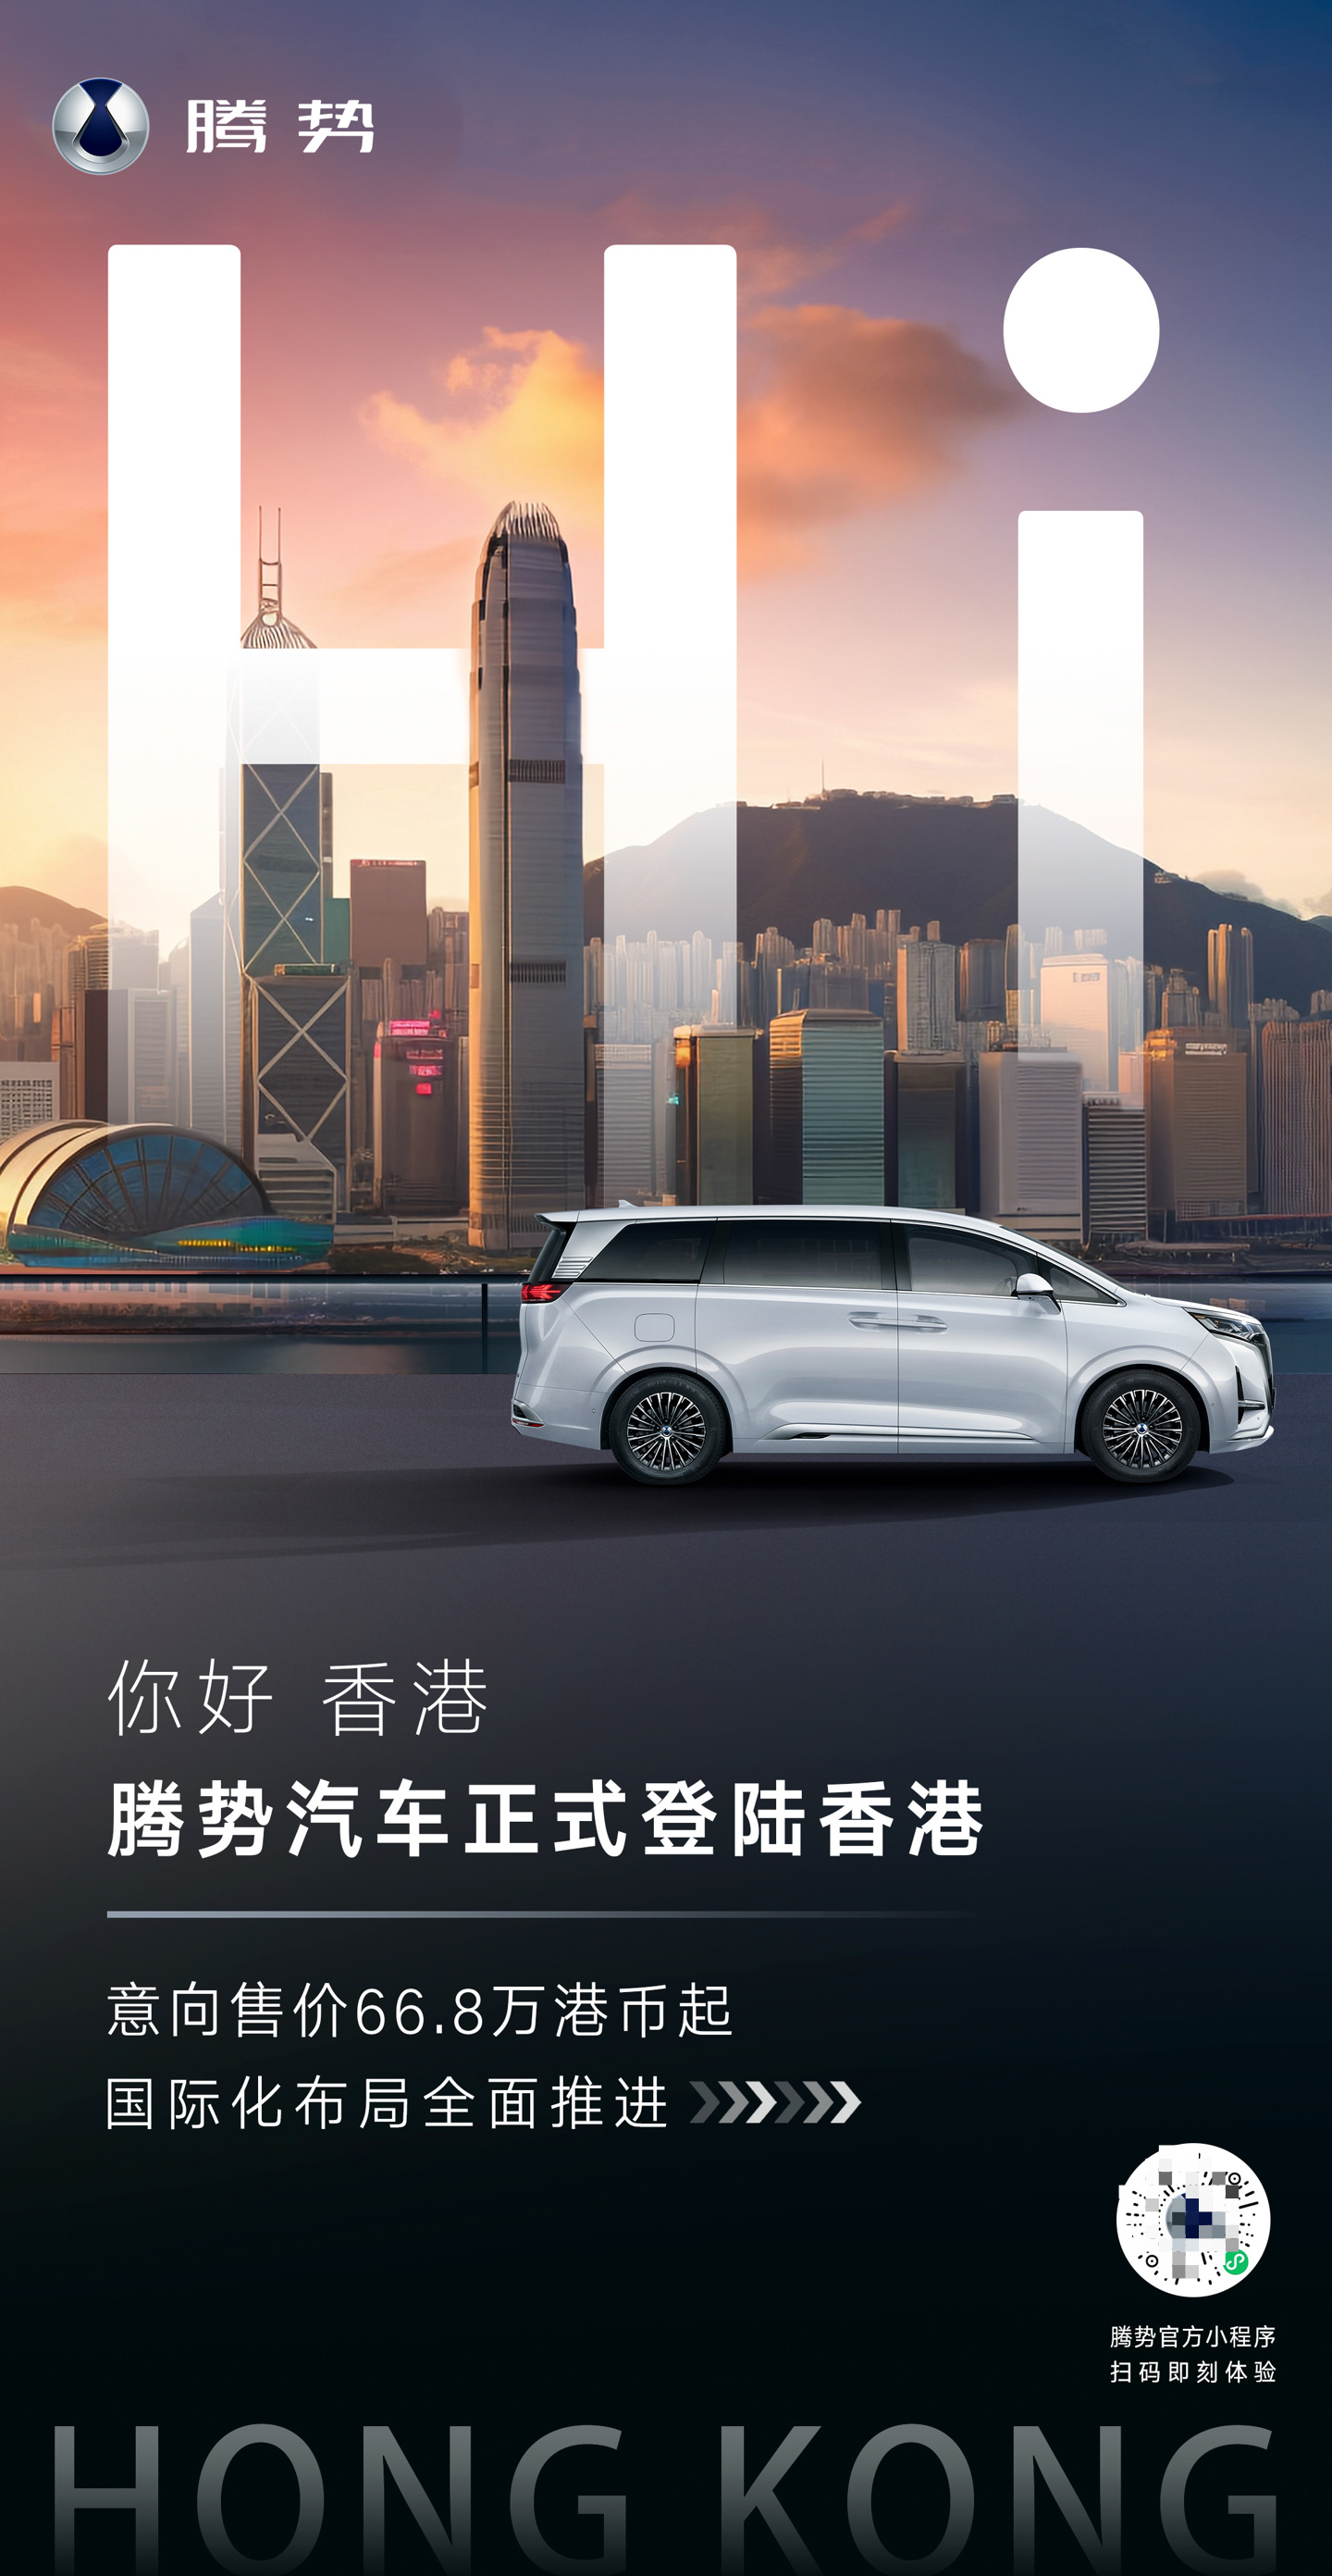 比亚迪腾势汽车宣布登陆中国香港市场,d9 意向价 668 万港币起